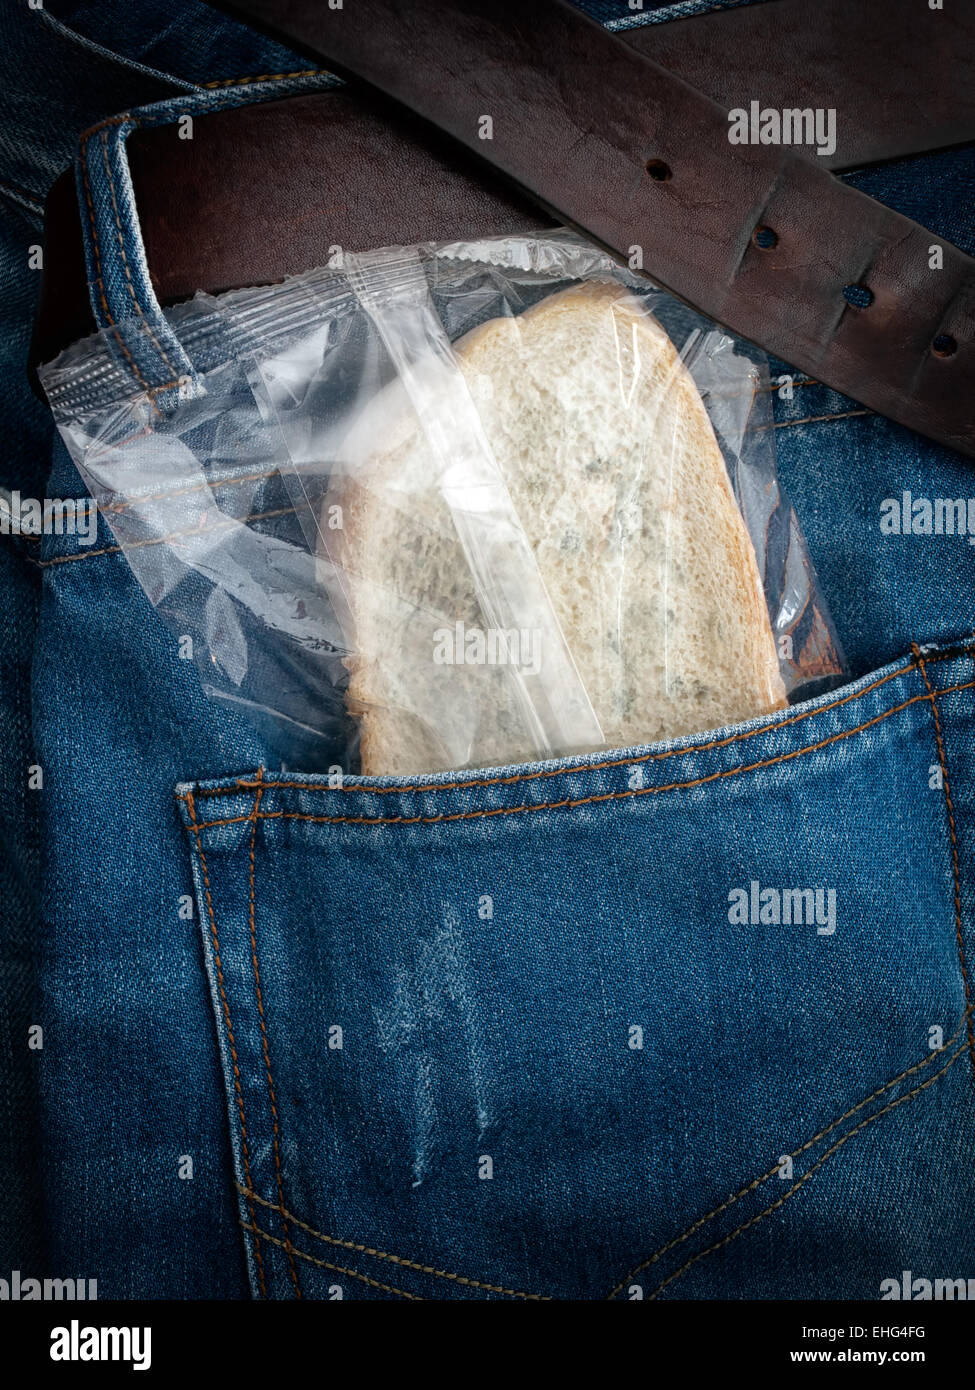 Schimmelige Scheibe Brot verpackt in der Tasche. Stockfoto